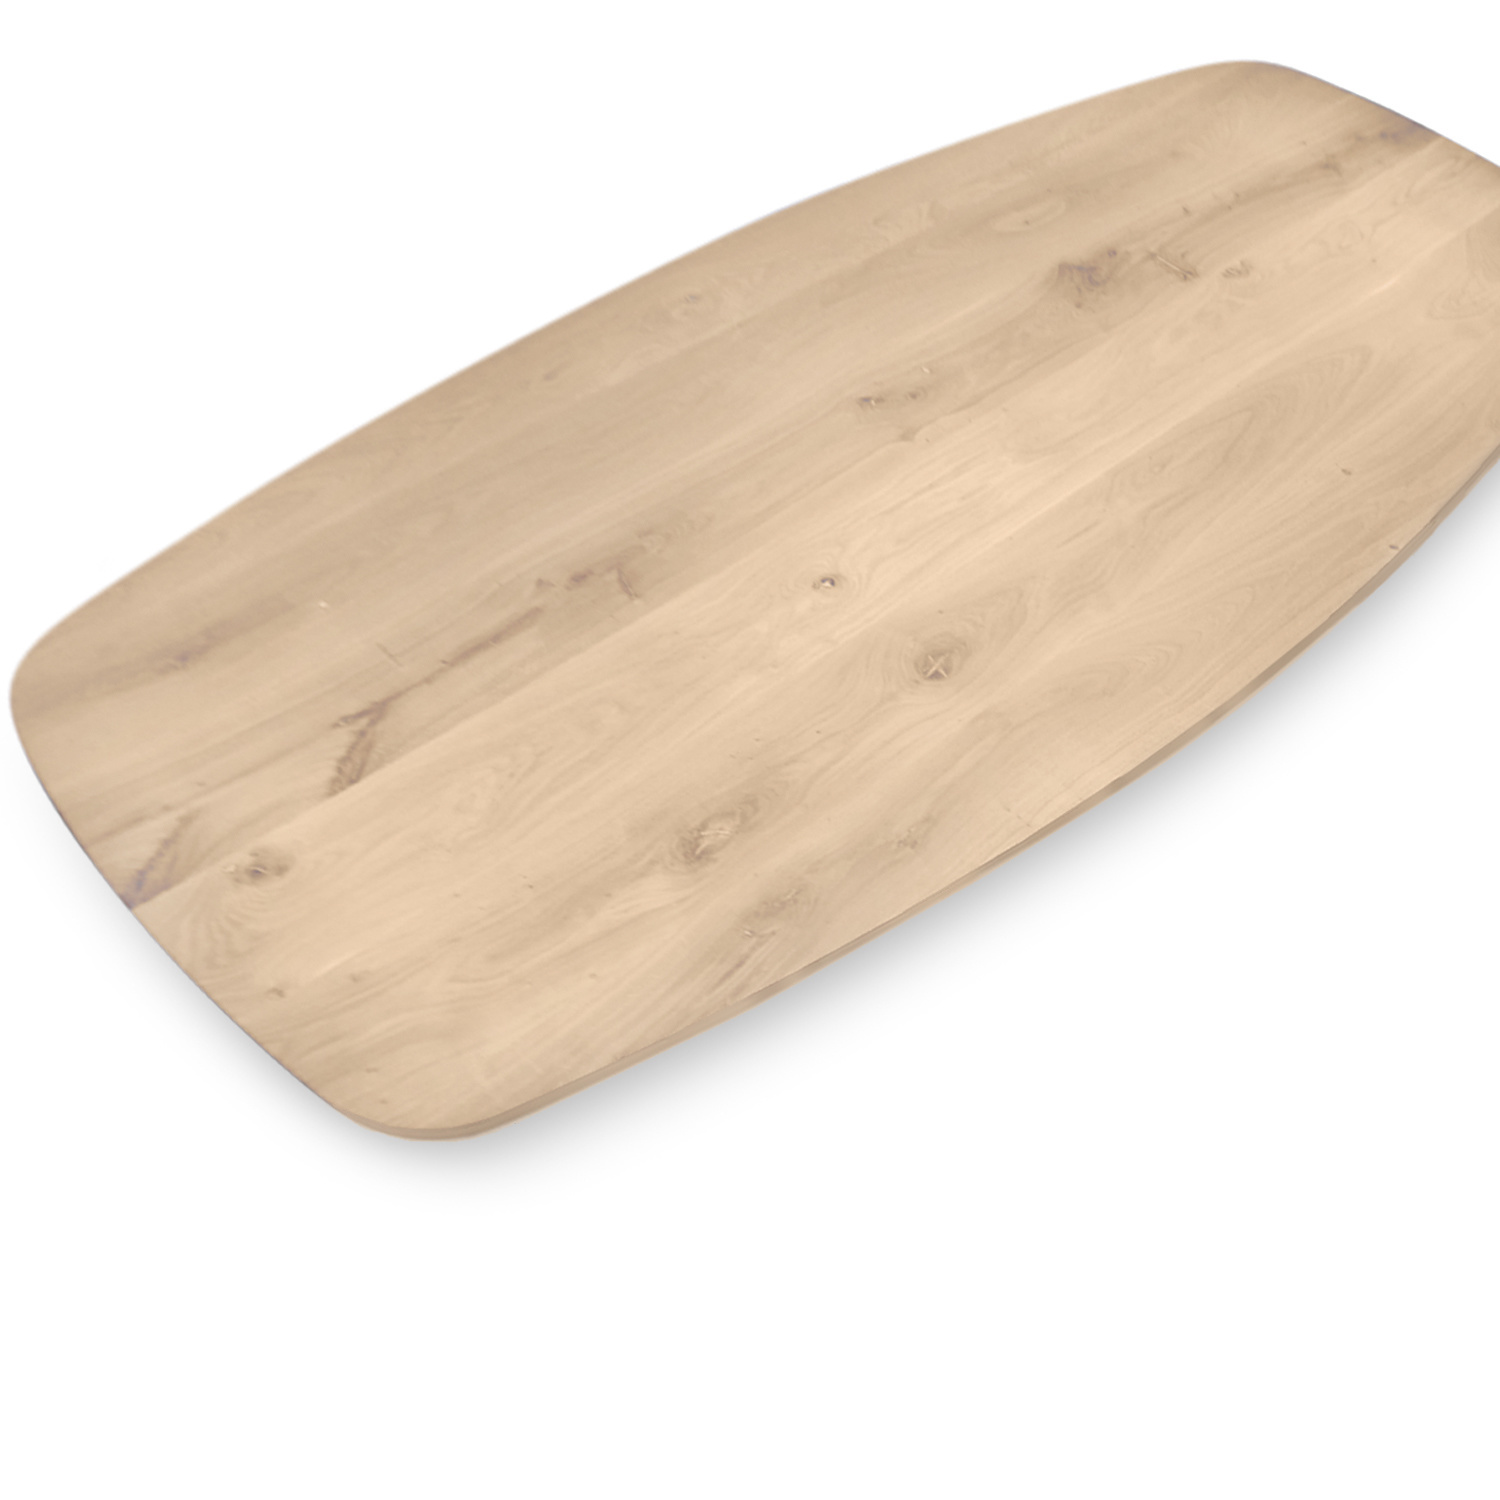  Tischplatte Eiche dänisch-oval - 2 cm dick - Eichenholz Rustikal - Bootsform Eiche Tischplatte massiv - HF 8-12%